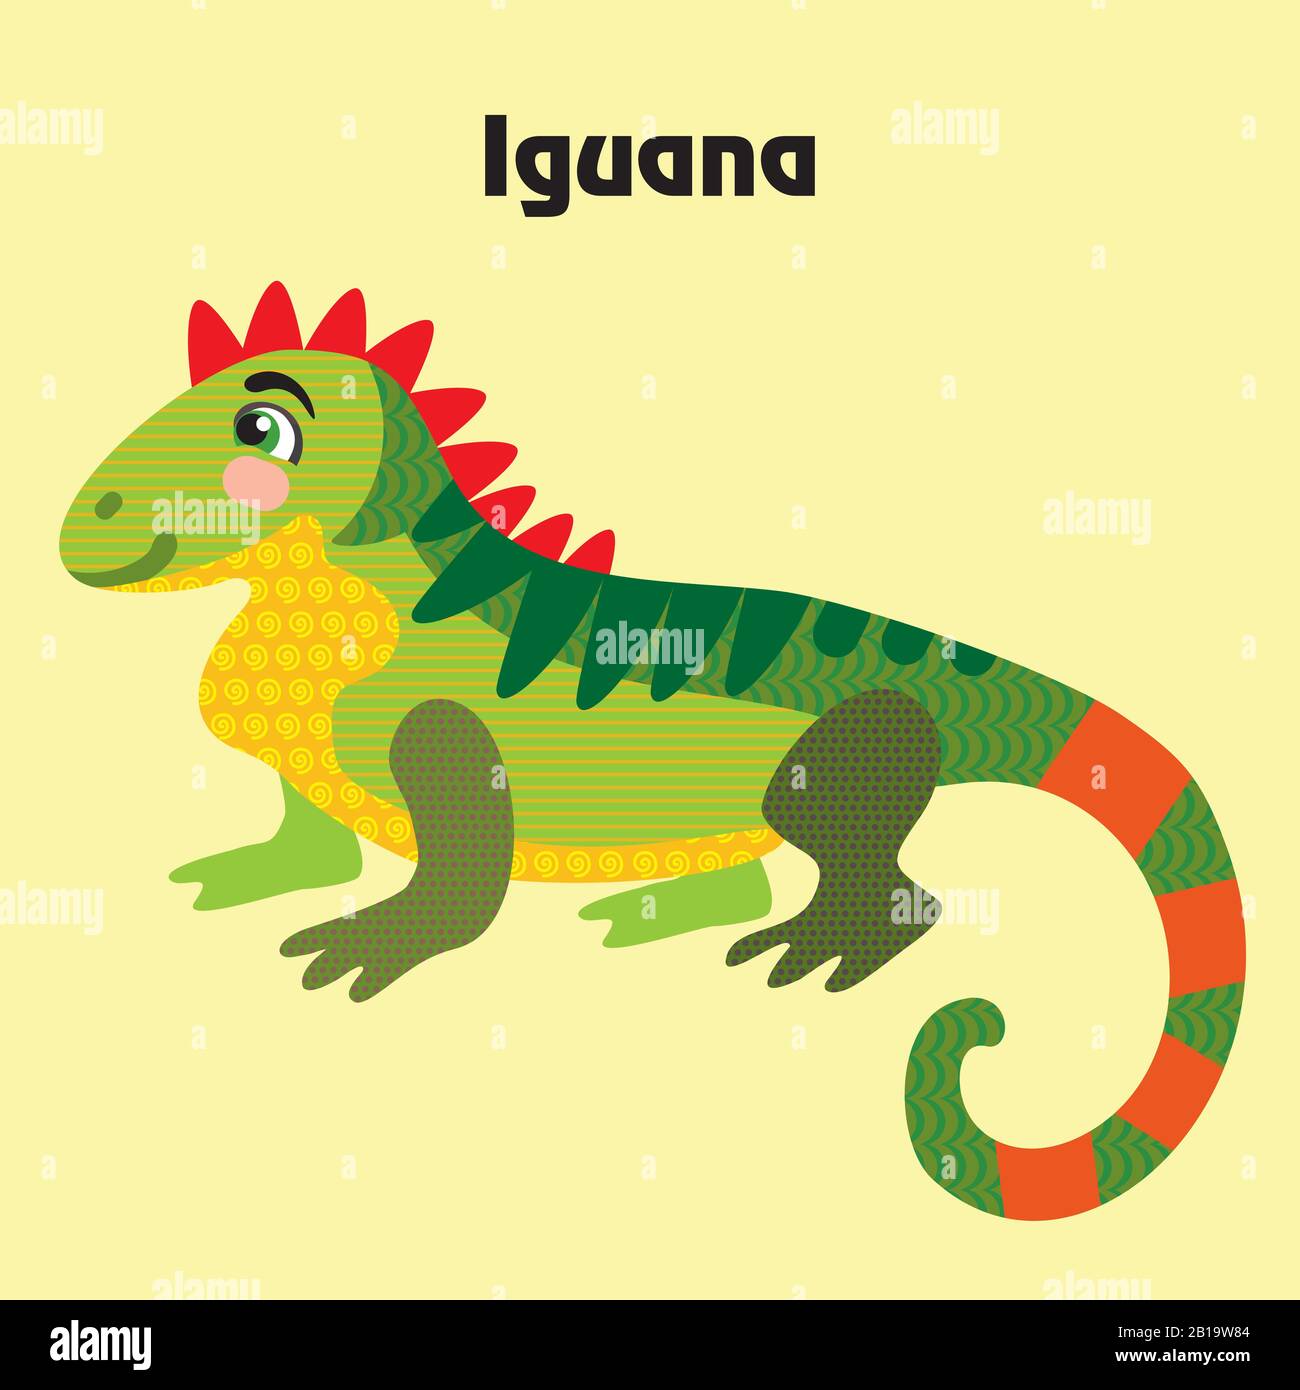 Farbenfroher dekorativer Umriss süße Iguana-Sittiing im Profil. Wilde Tiere und Vögel Vektor-Zeichentrickfiguren flache Abbildung in verschiedenen Farben ist Stock Vektor